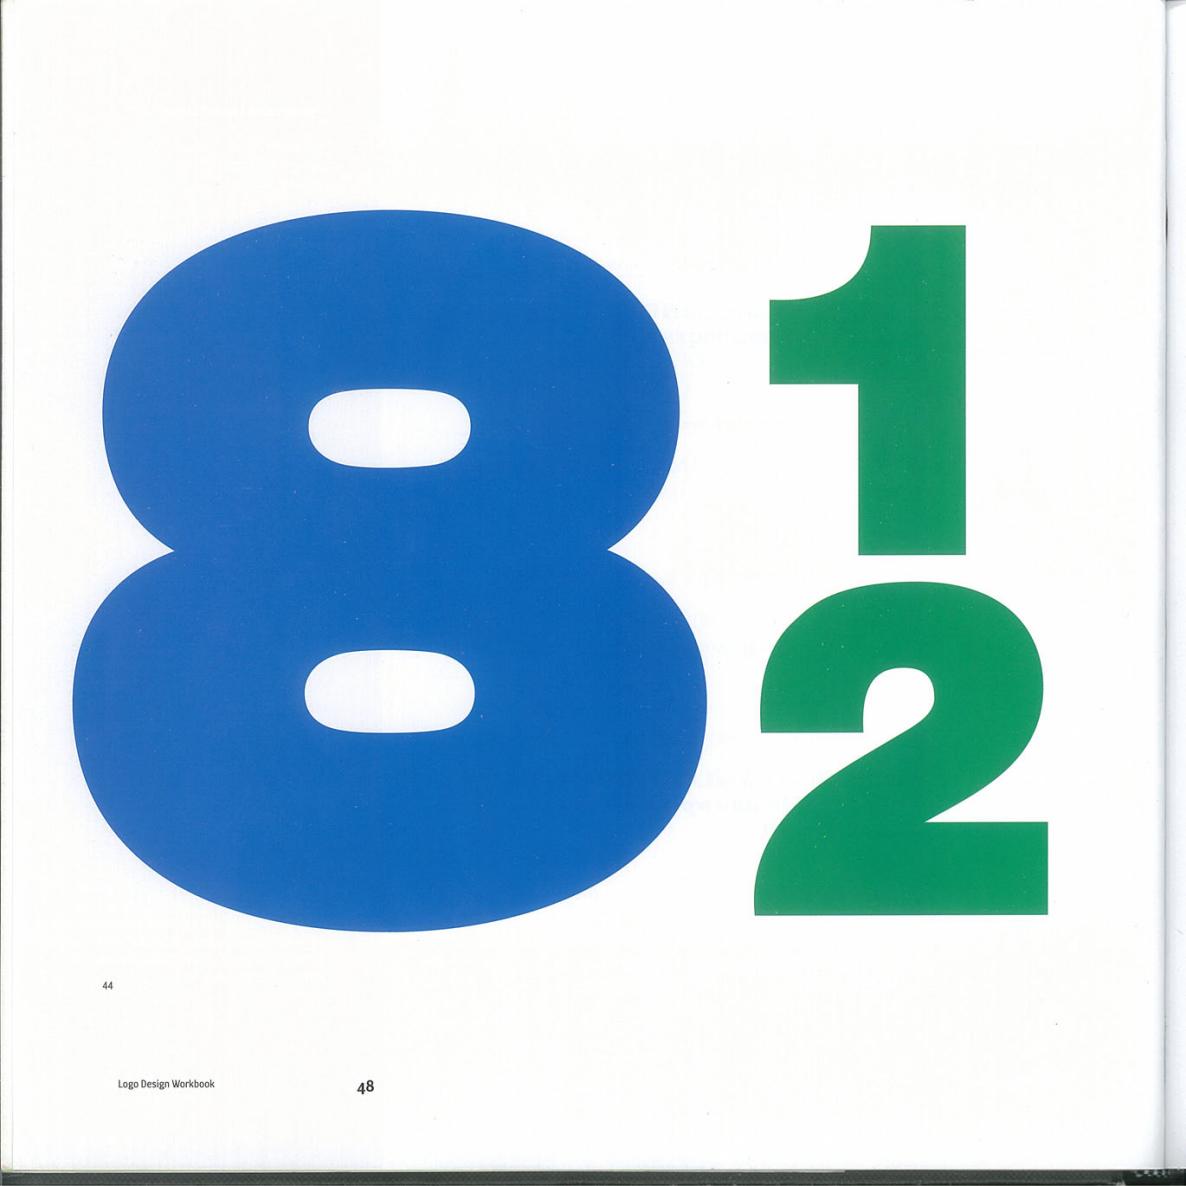 Logo Design Workbook - photo 48